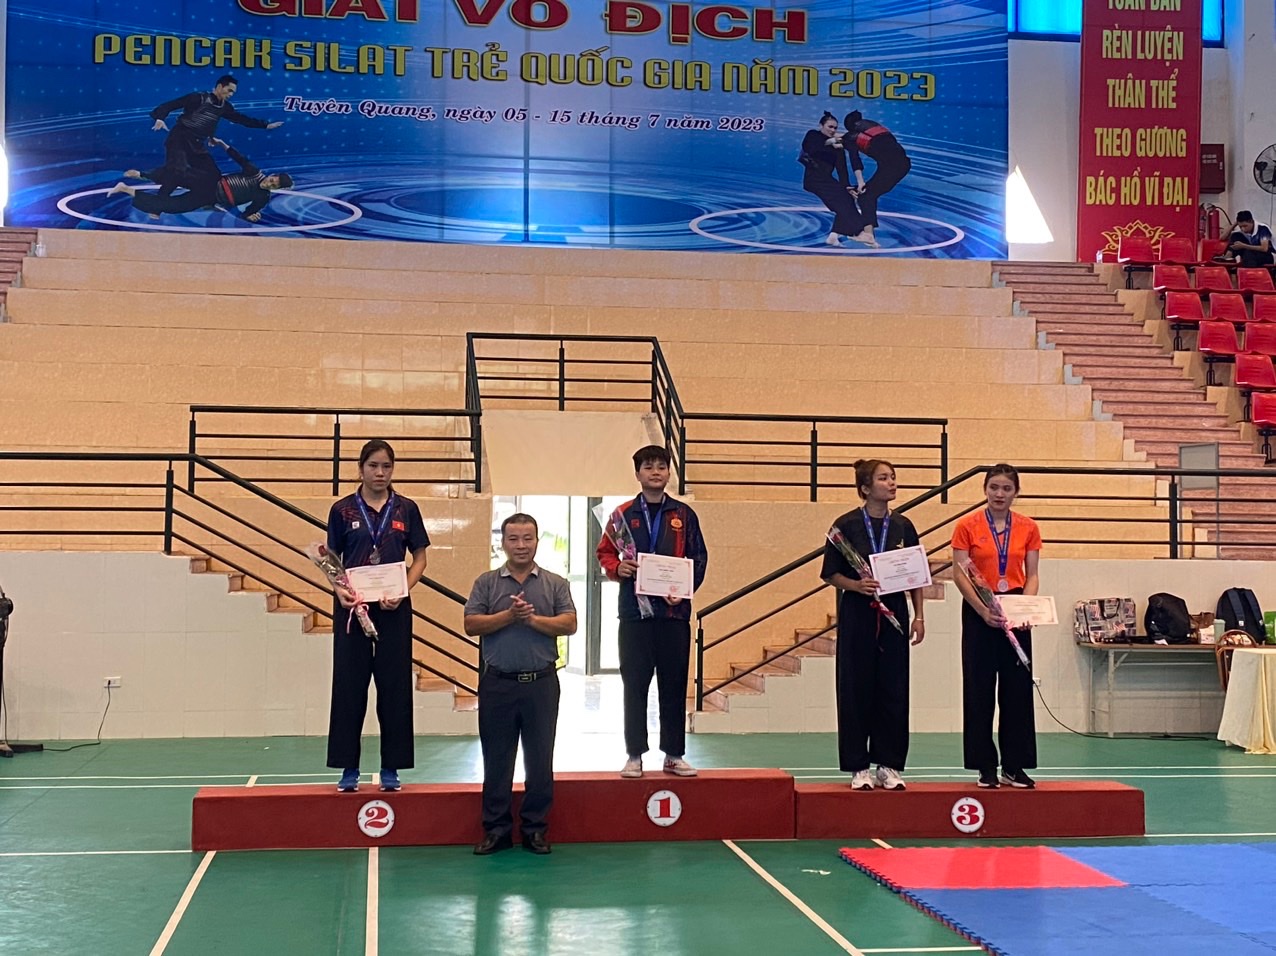 Nghệ An dành 6 huy chương tại giải Pencak silat trẻ quốc gia năm 2023